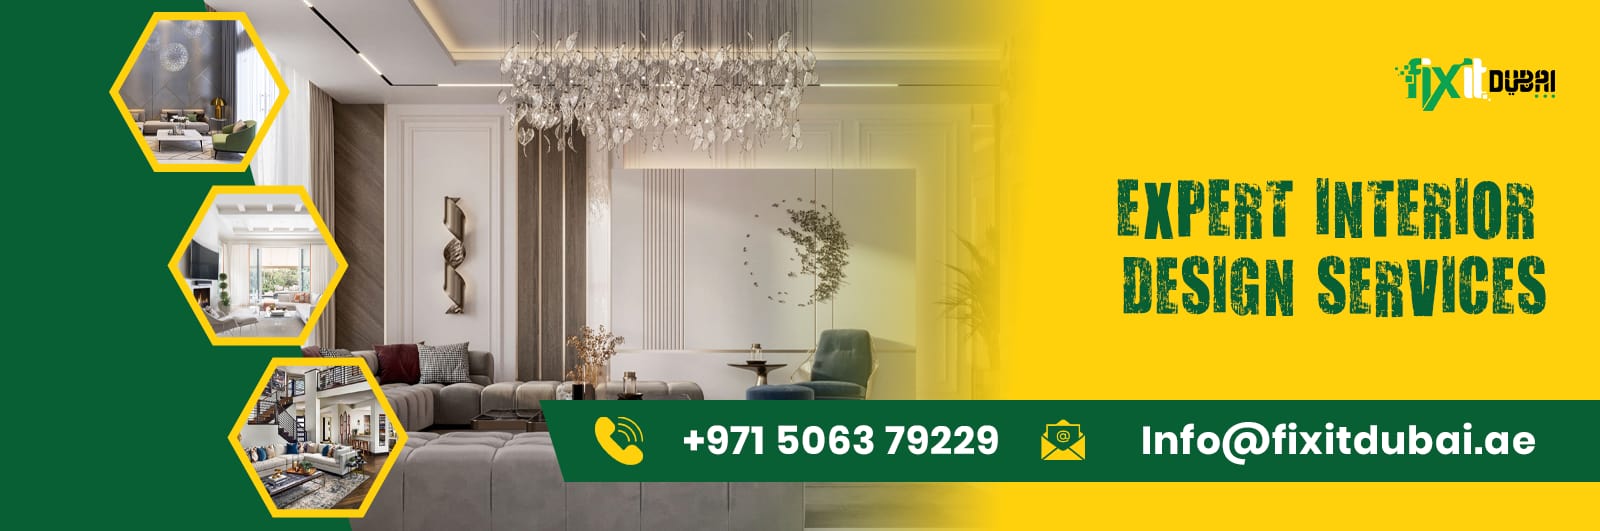 Interior Design Company Dubai banner